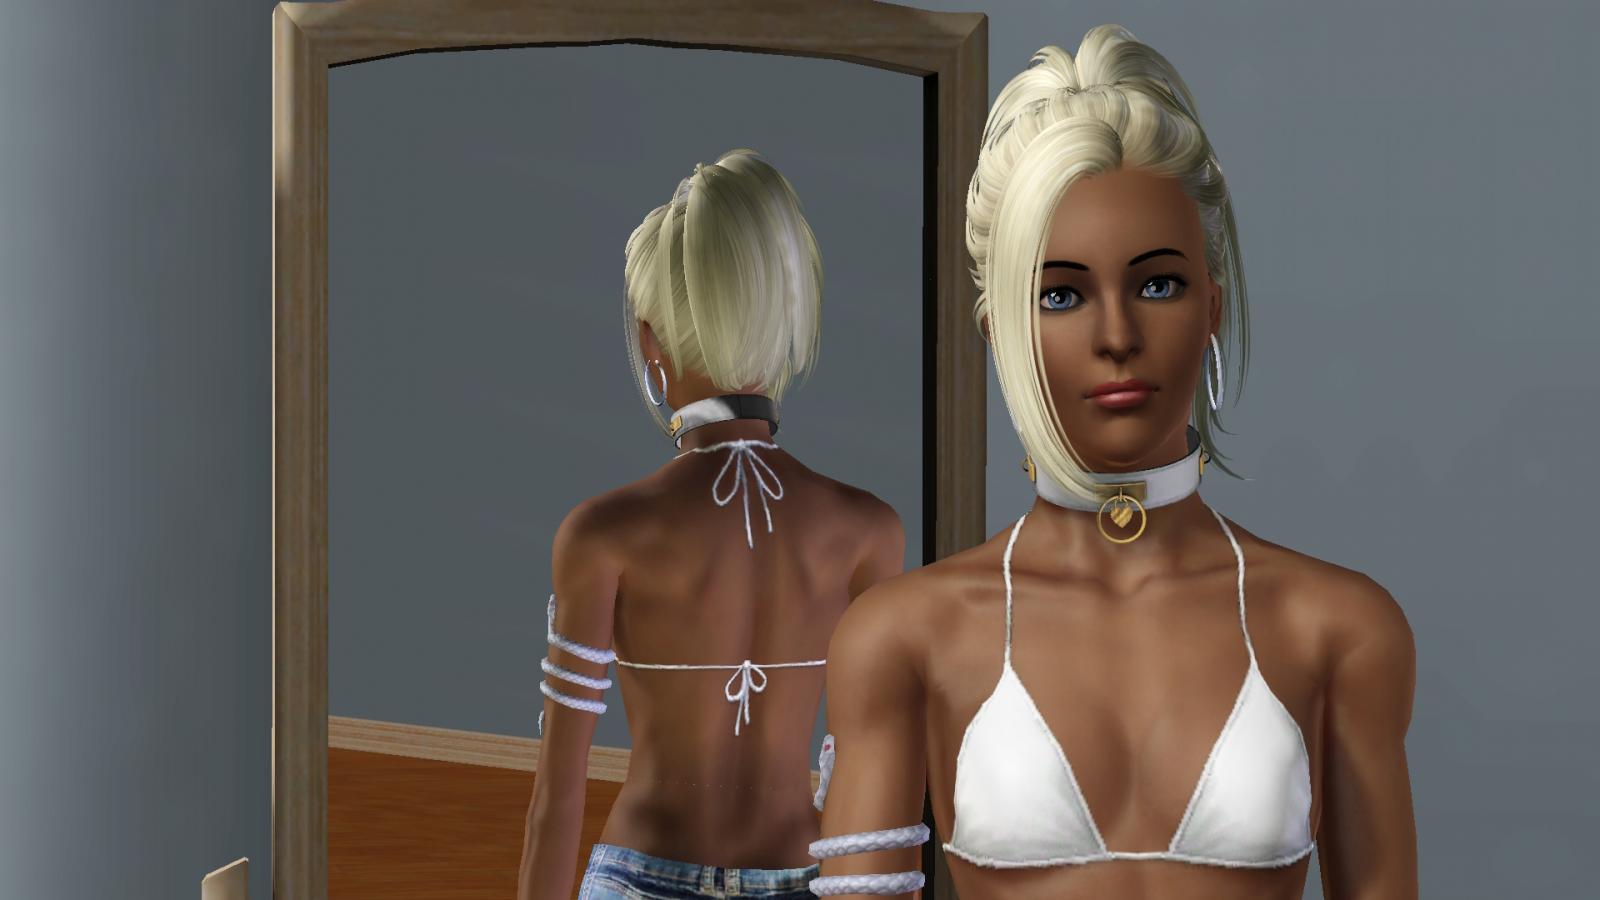 my latest Sims 3 created girl